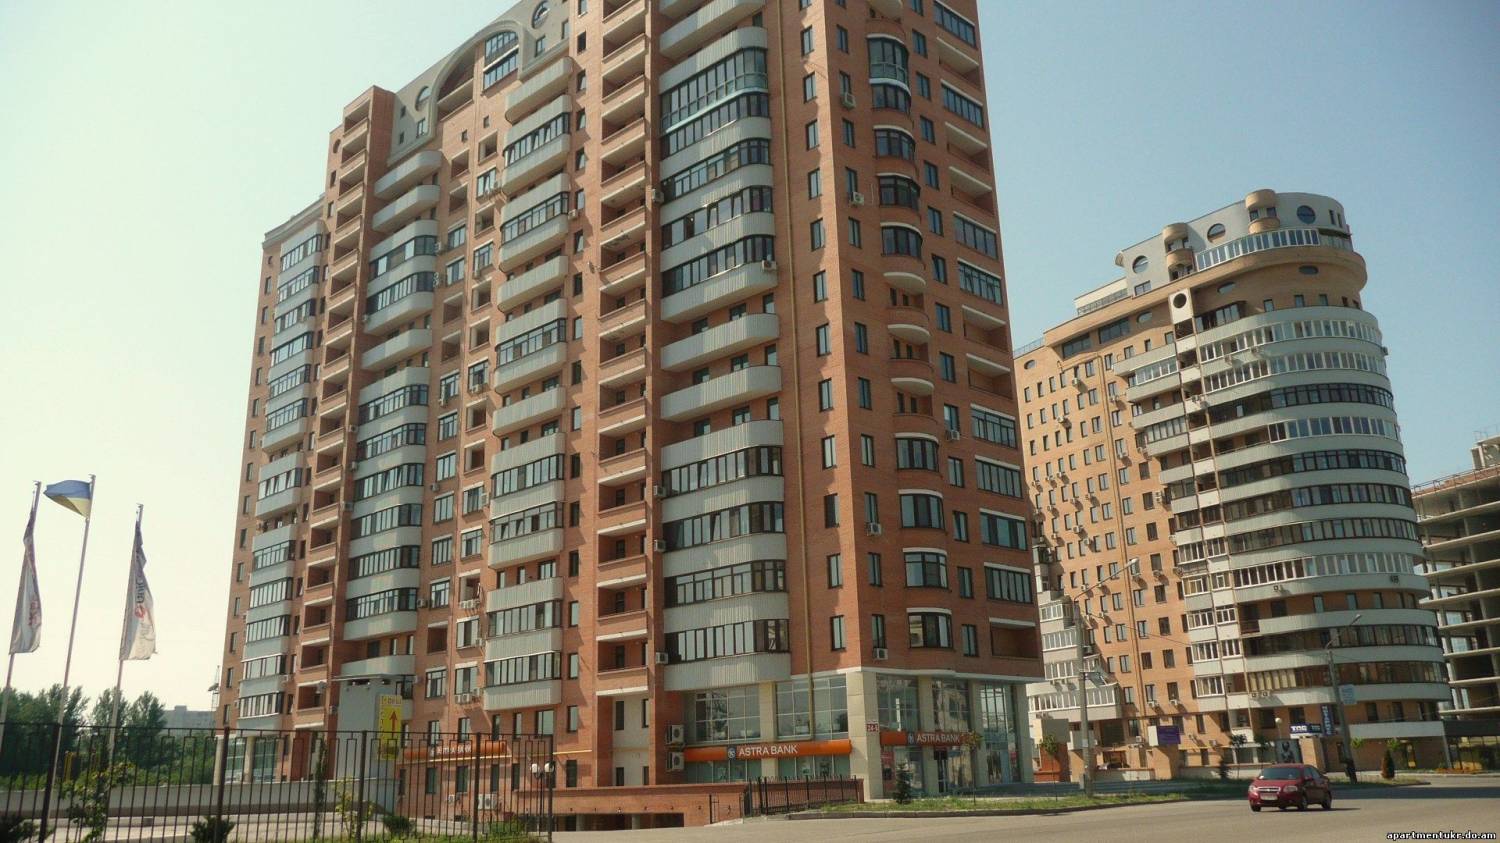 Арендование жилья в Харькове на сутки имеет огромный ресурс и перспективу